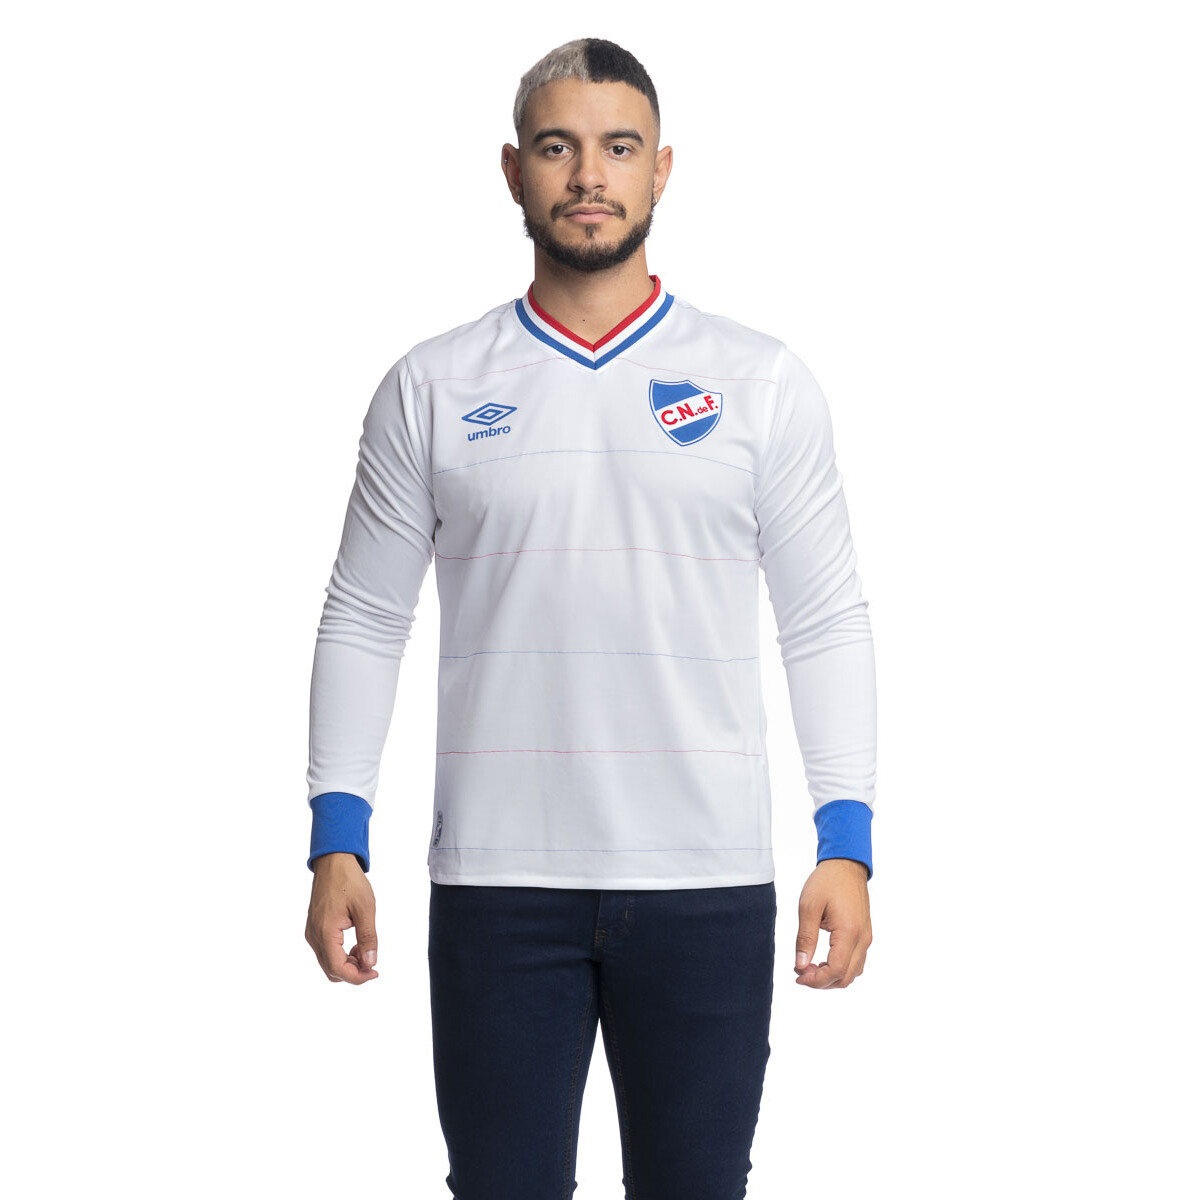 Camiseta 2016 Umbro Nacional Oficial Hombre - 0v4 